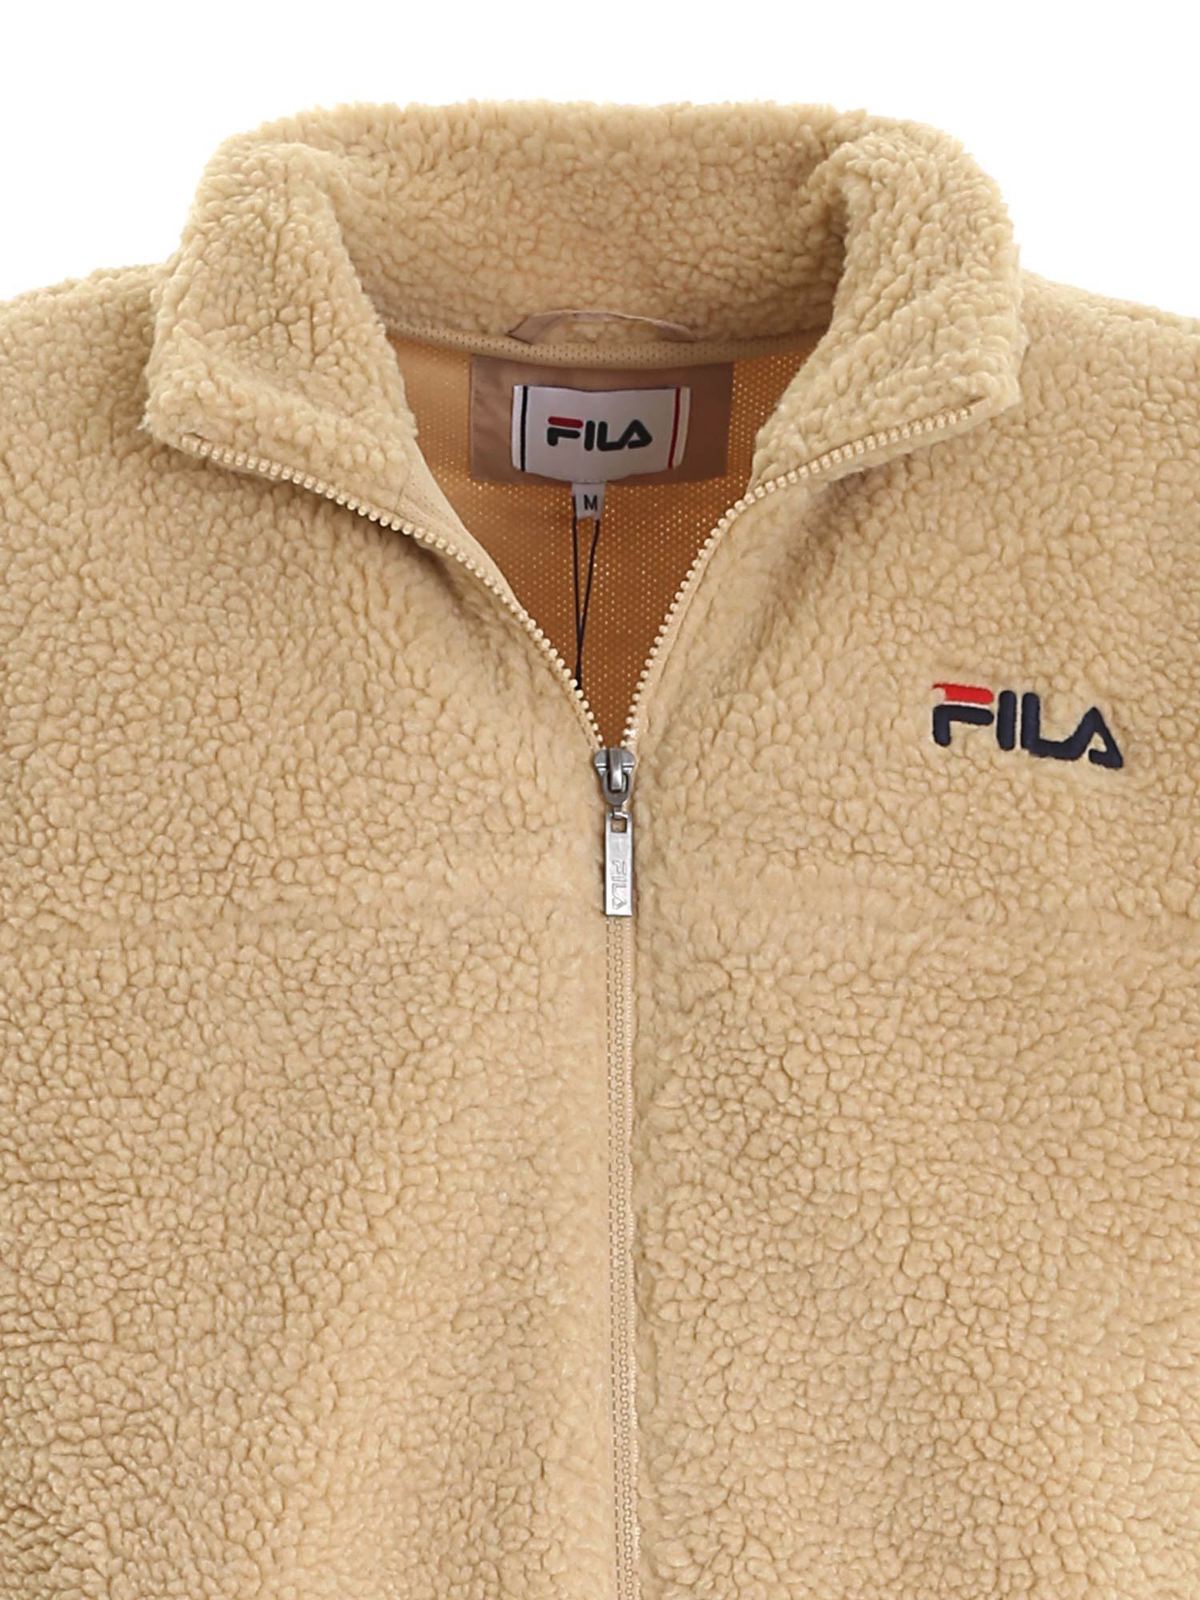 Rige Grønland kor Sweatshirts & Sweaters Fila - Teddy-effect sweatshirt in beige - 687987A694